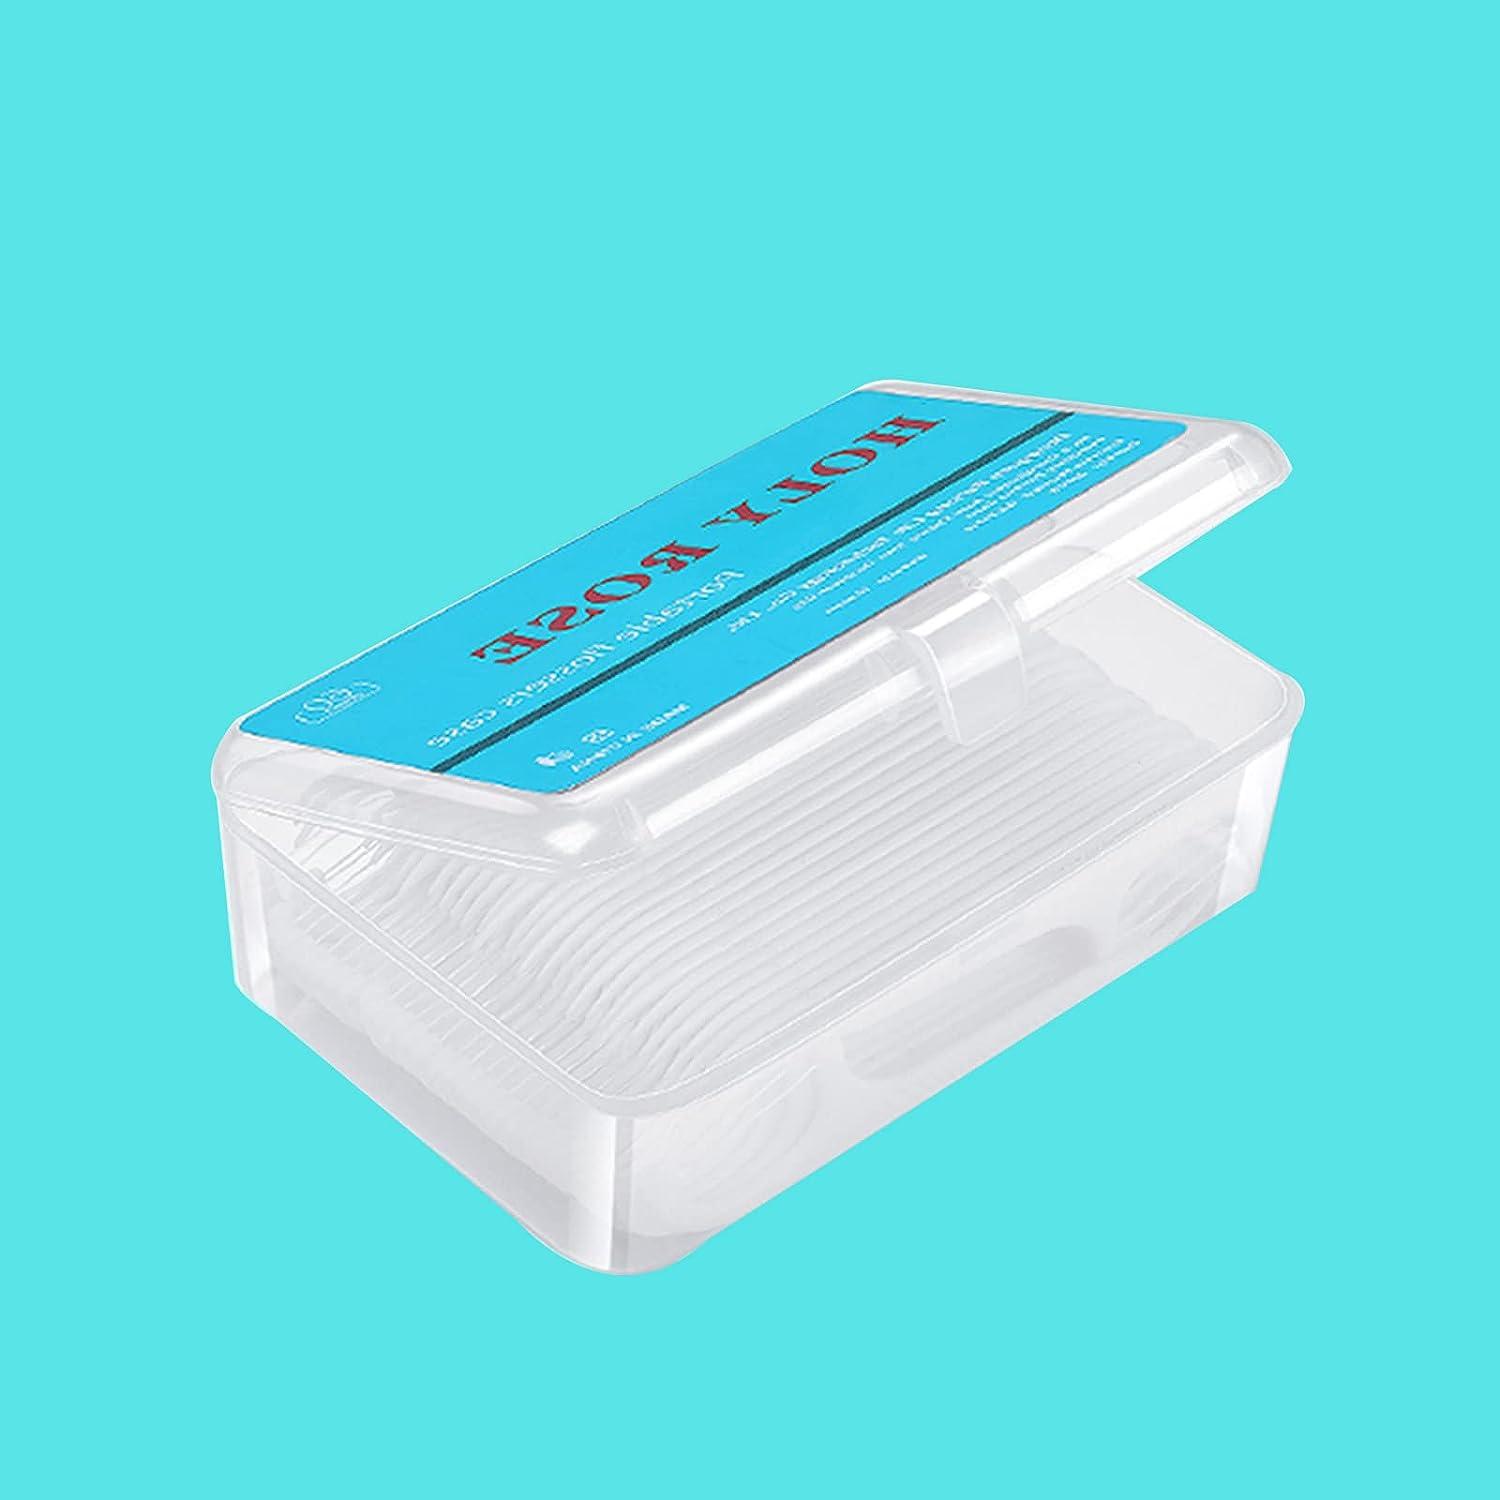 Portable Dental Floss Picks Case 2 Box,Holy Rose Brazil